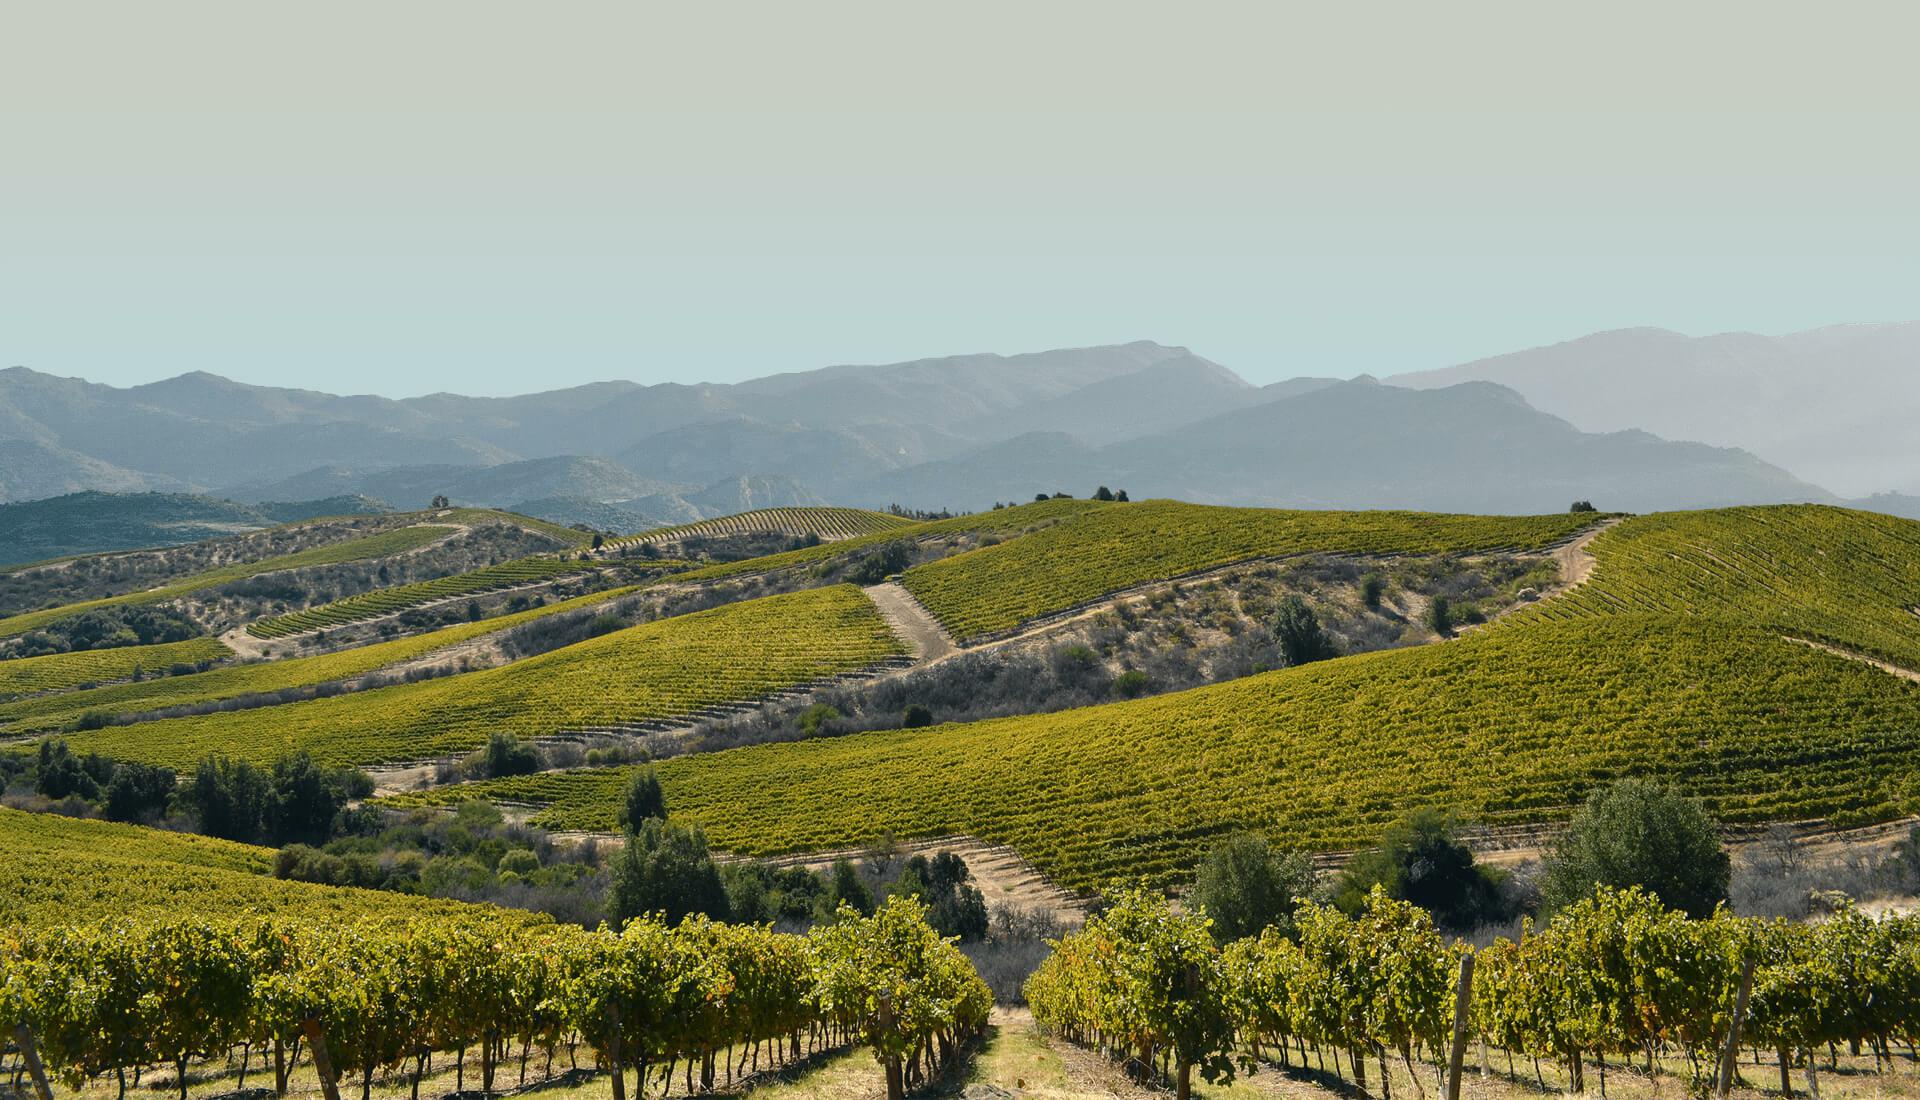 智利可持续发展葡萄酒，绿色方面指葡萄园，再次获得智利葡萄酒行业的认可。这次审核的达标率高达97%，干露酒庄再次被高度认可